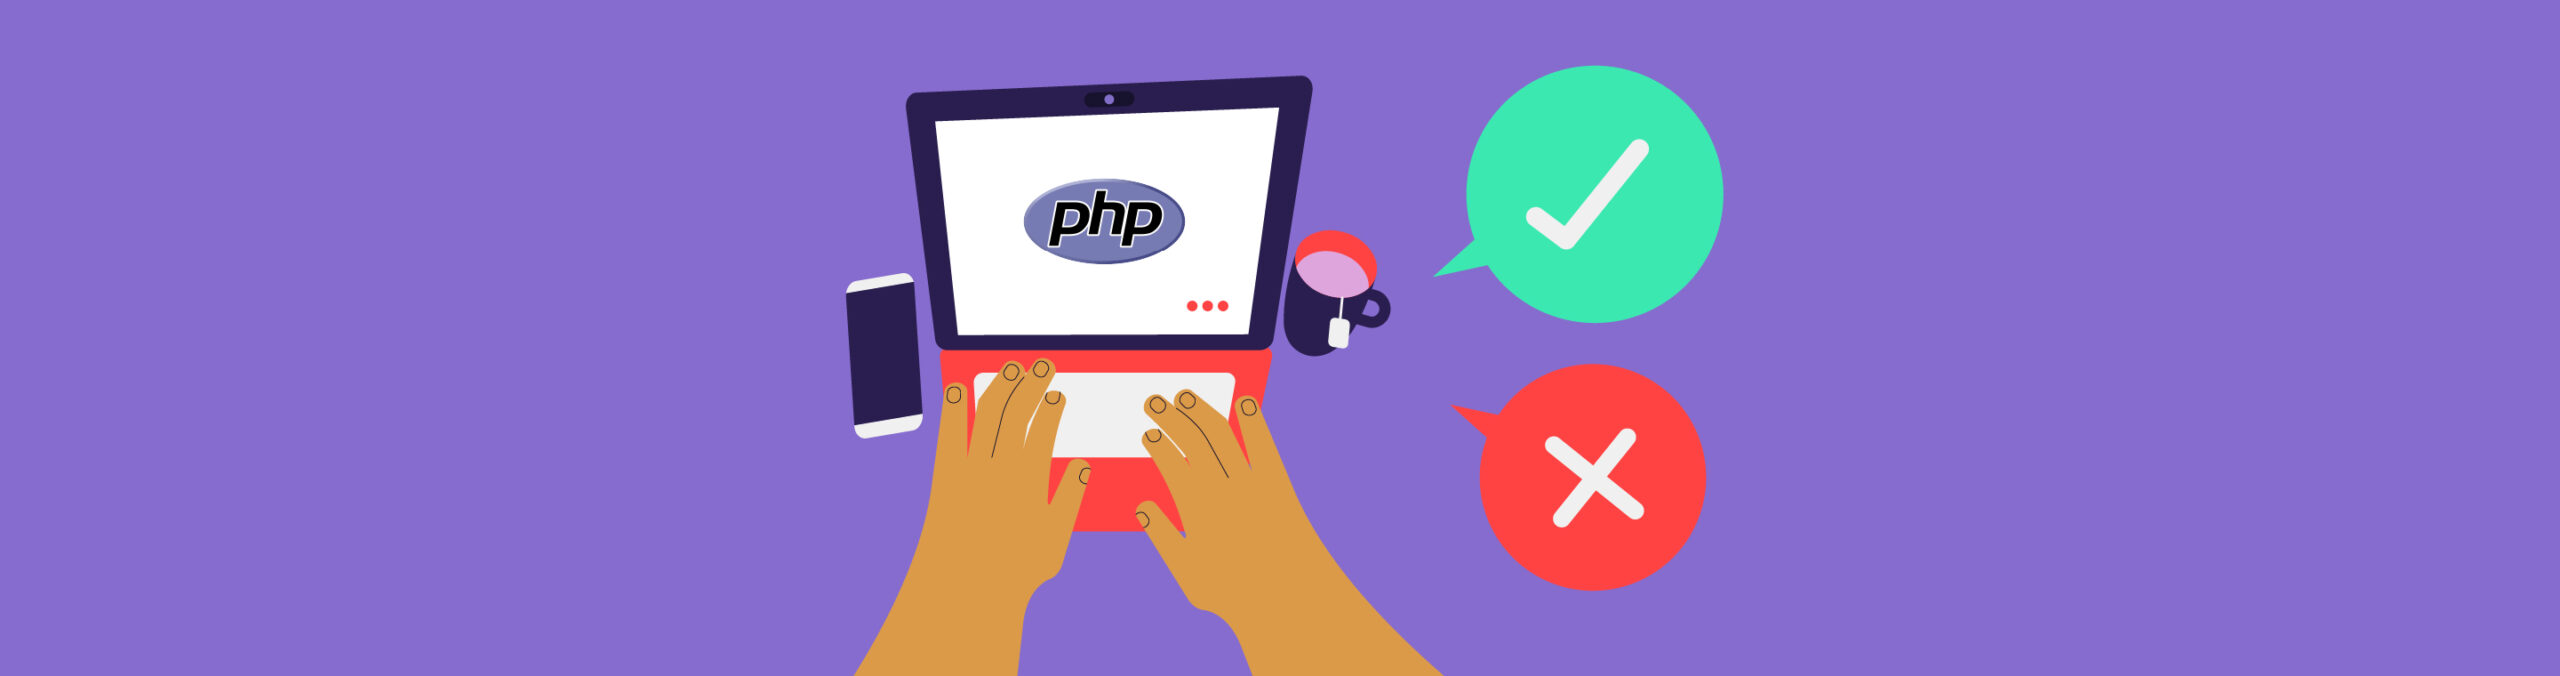 10 ventajas y desventajas de PHP